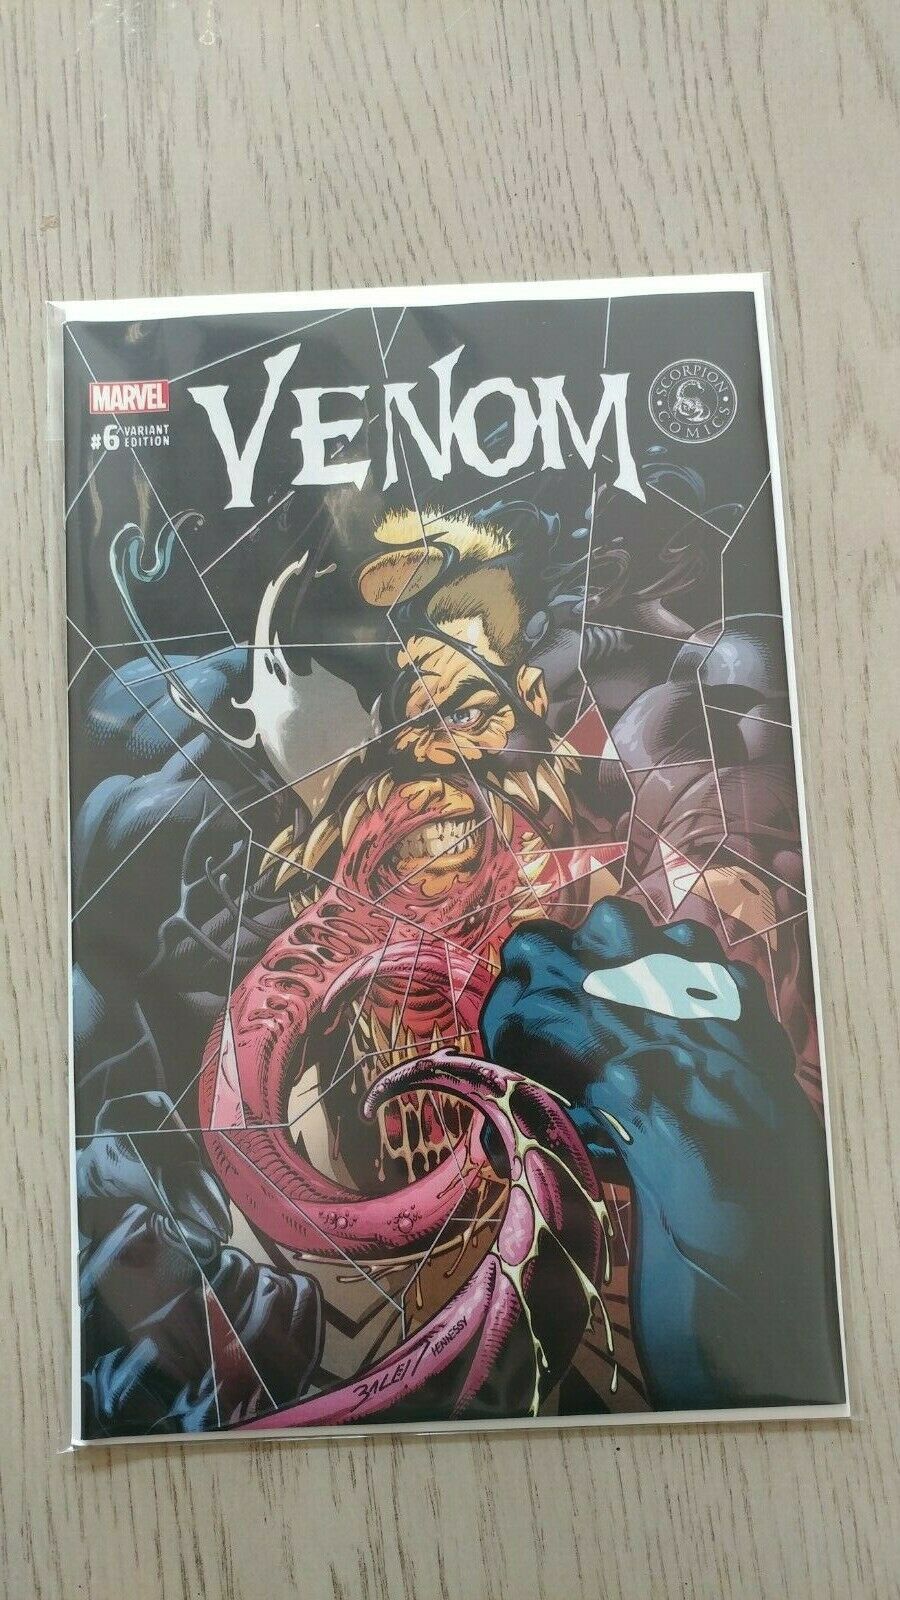 NM Venom Scorpion Comics Variant #6